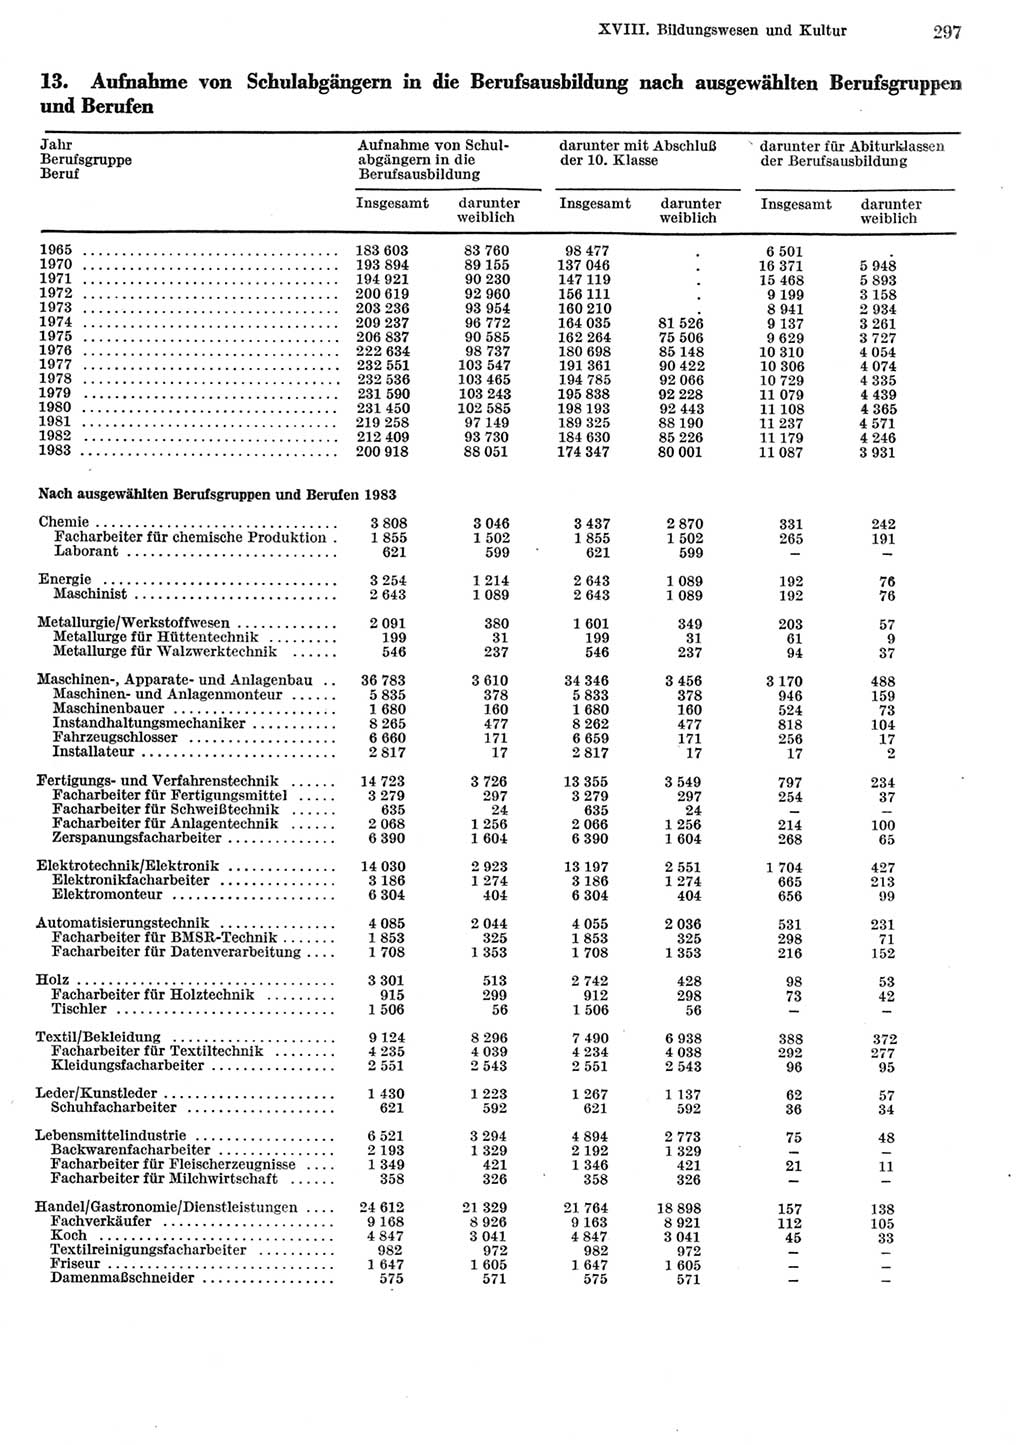 Statistisches Jahrbuch der Deutschen Demokratischen Republik (DDR) 1984, Seite 297 (Stat. Jb. DDR 1984, S. 297)